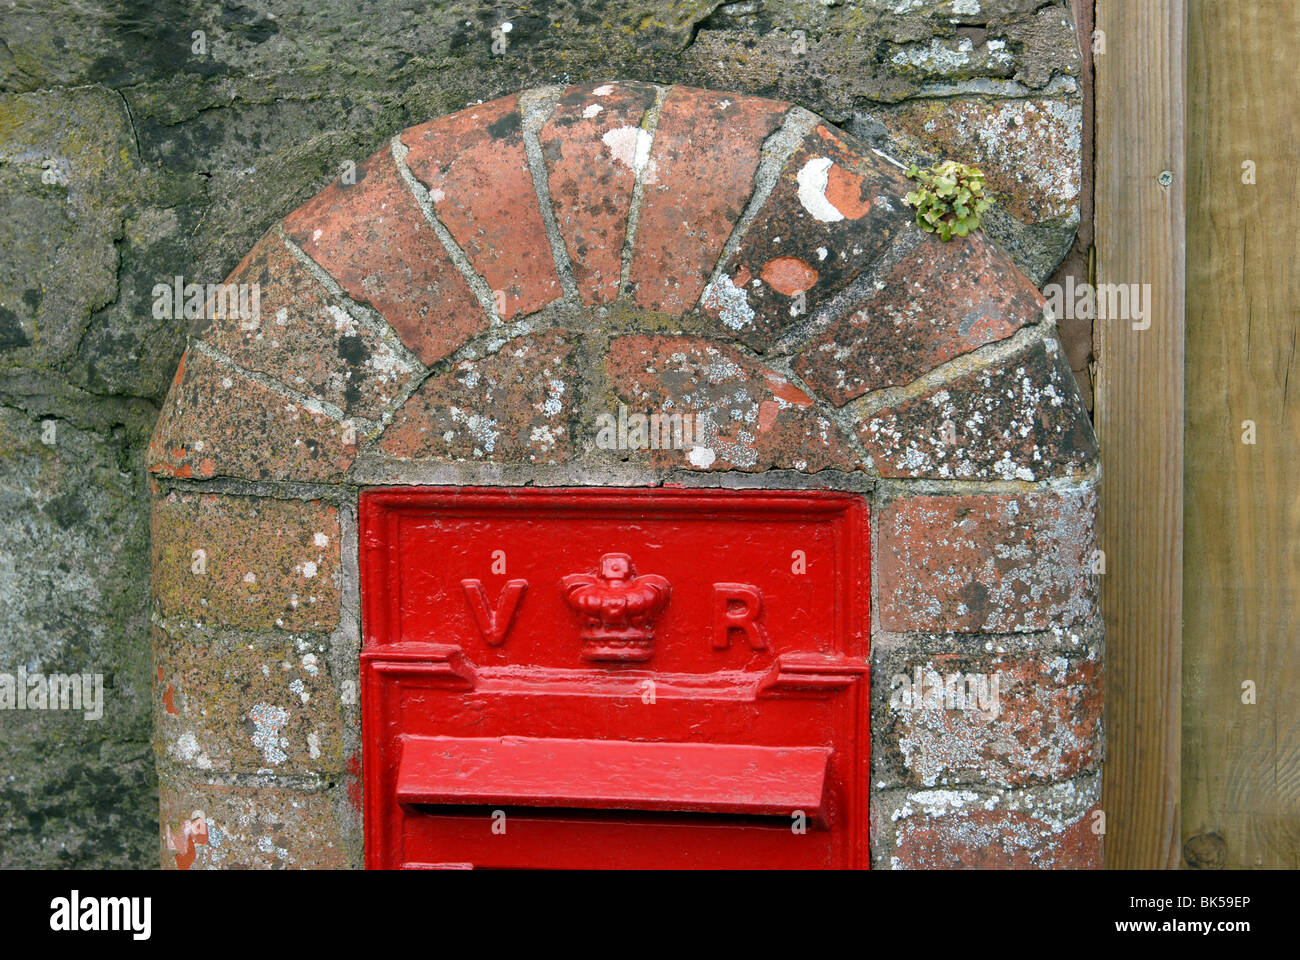 Leuchtend rote viktorianischen Briefkasten in einen gemauerten Pfeiler  eingefügt Stockfotografie - Alamy